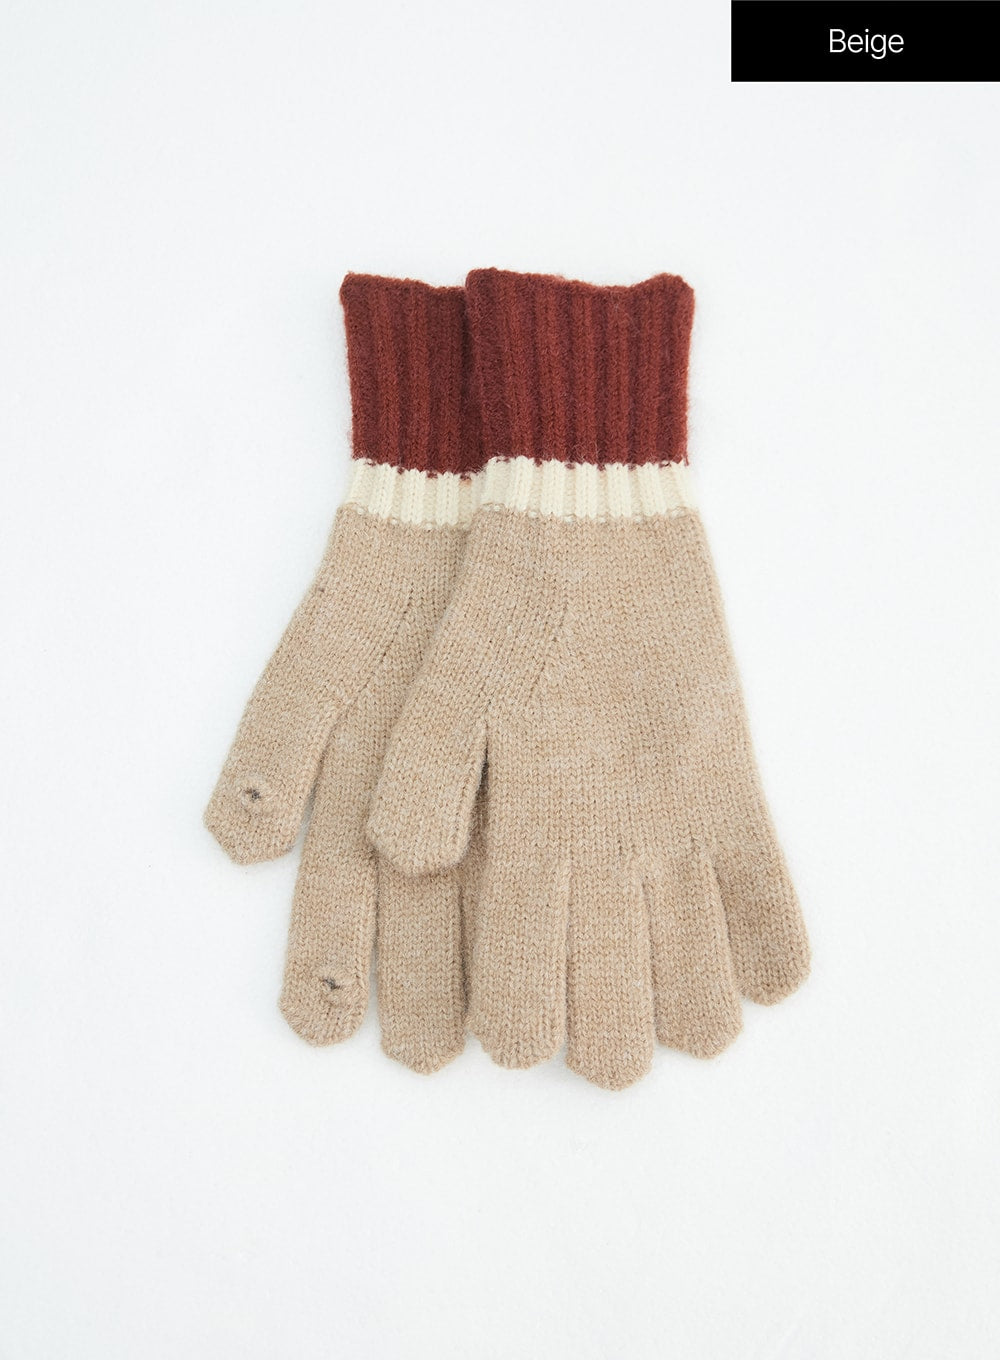 color-block-knit-gloves-in317 / Beige